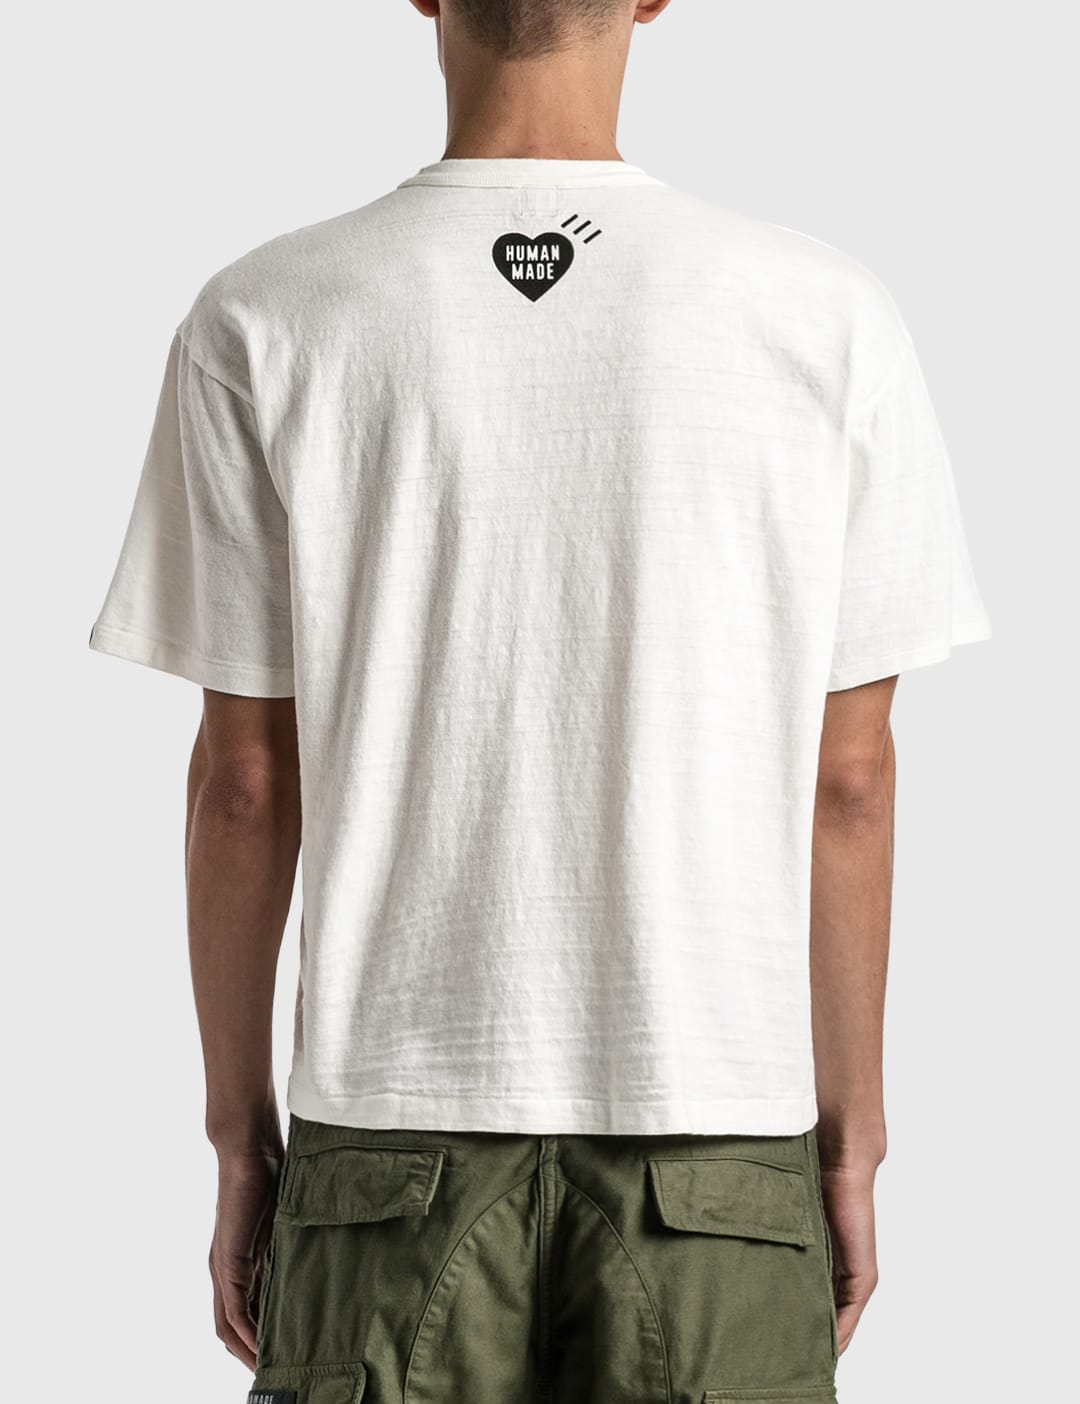 Human Made - Graphic T-shirt #12 | HBX - HYPEBEAST 为您搜罗全球